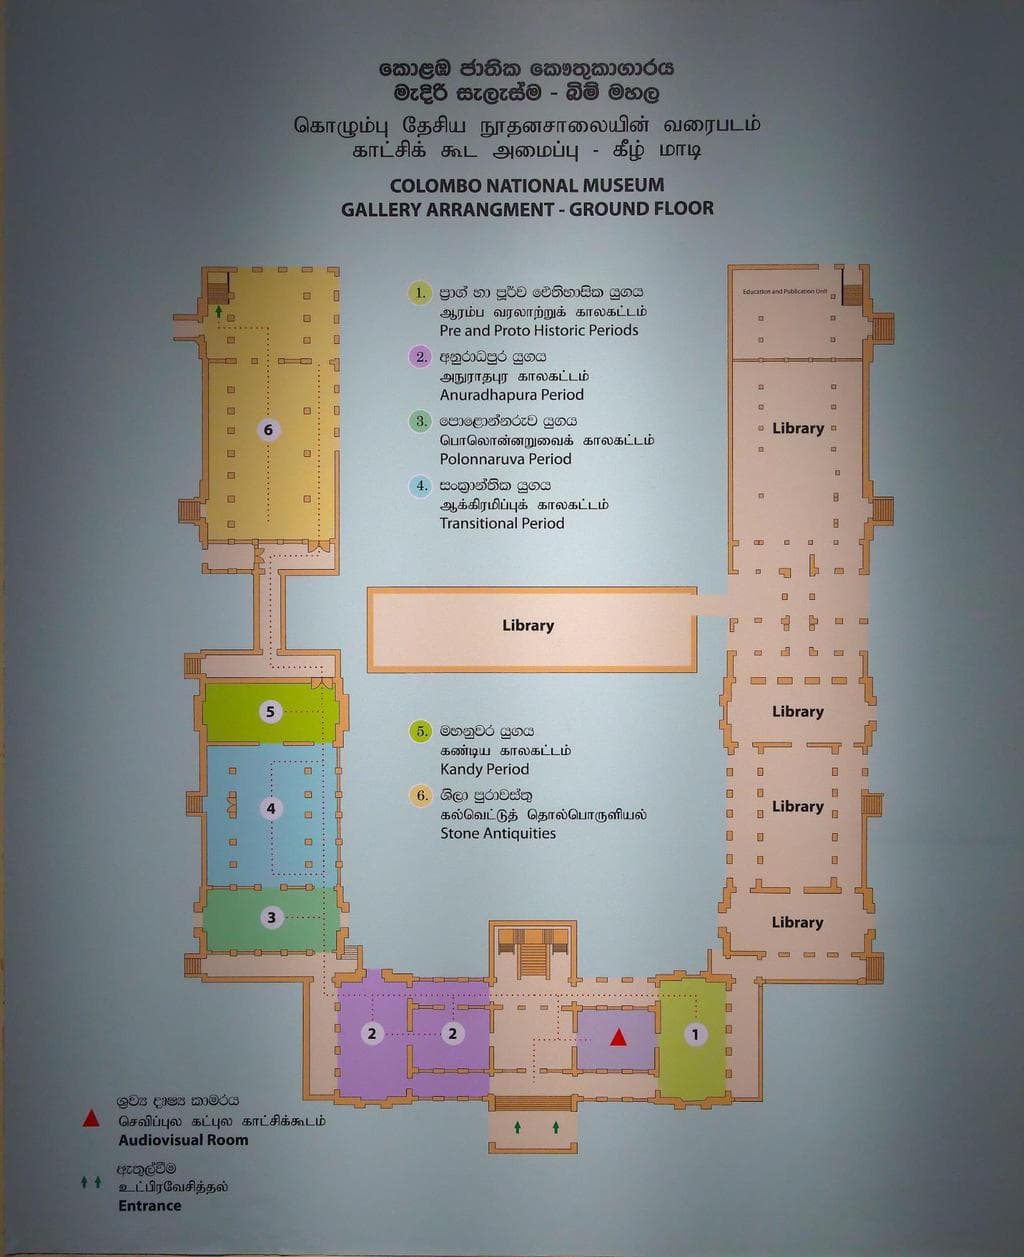 Floor plan ground floor of the National Museum